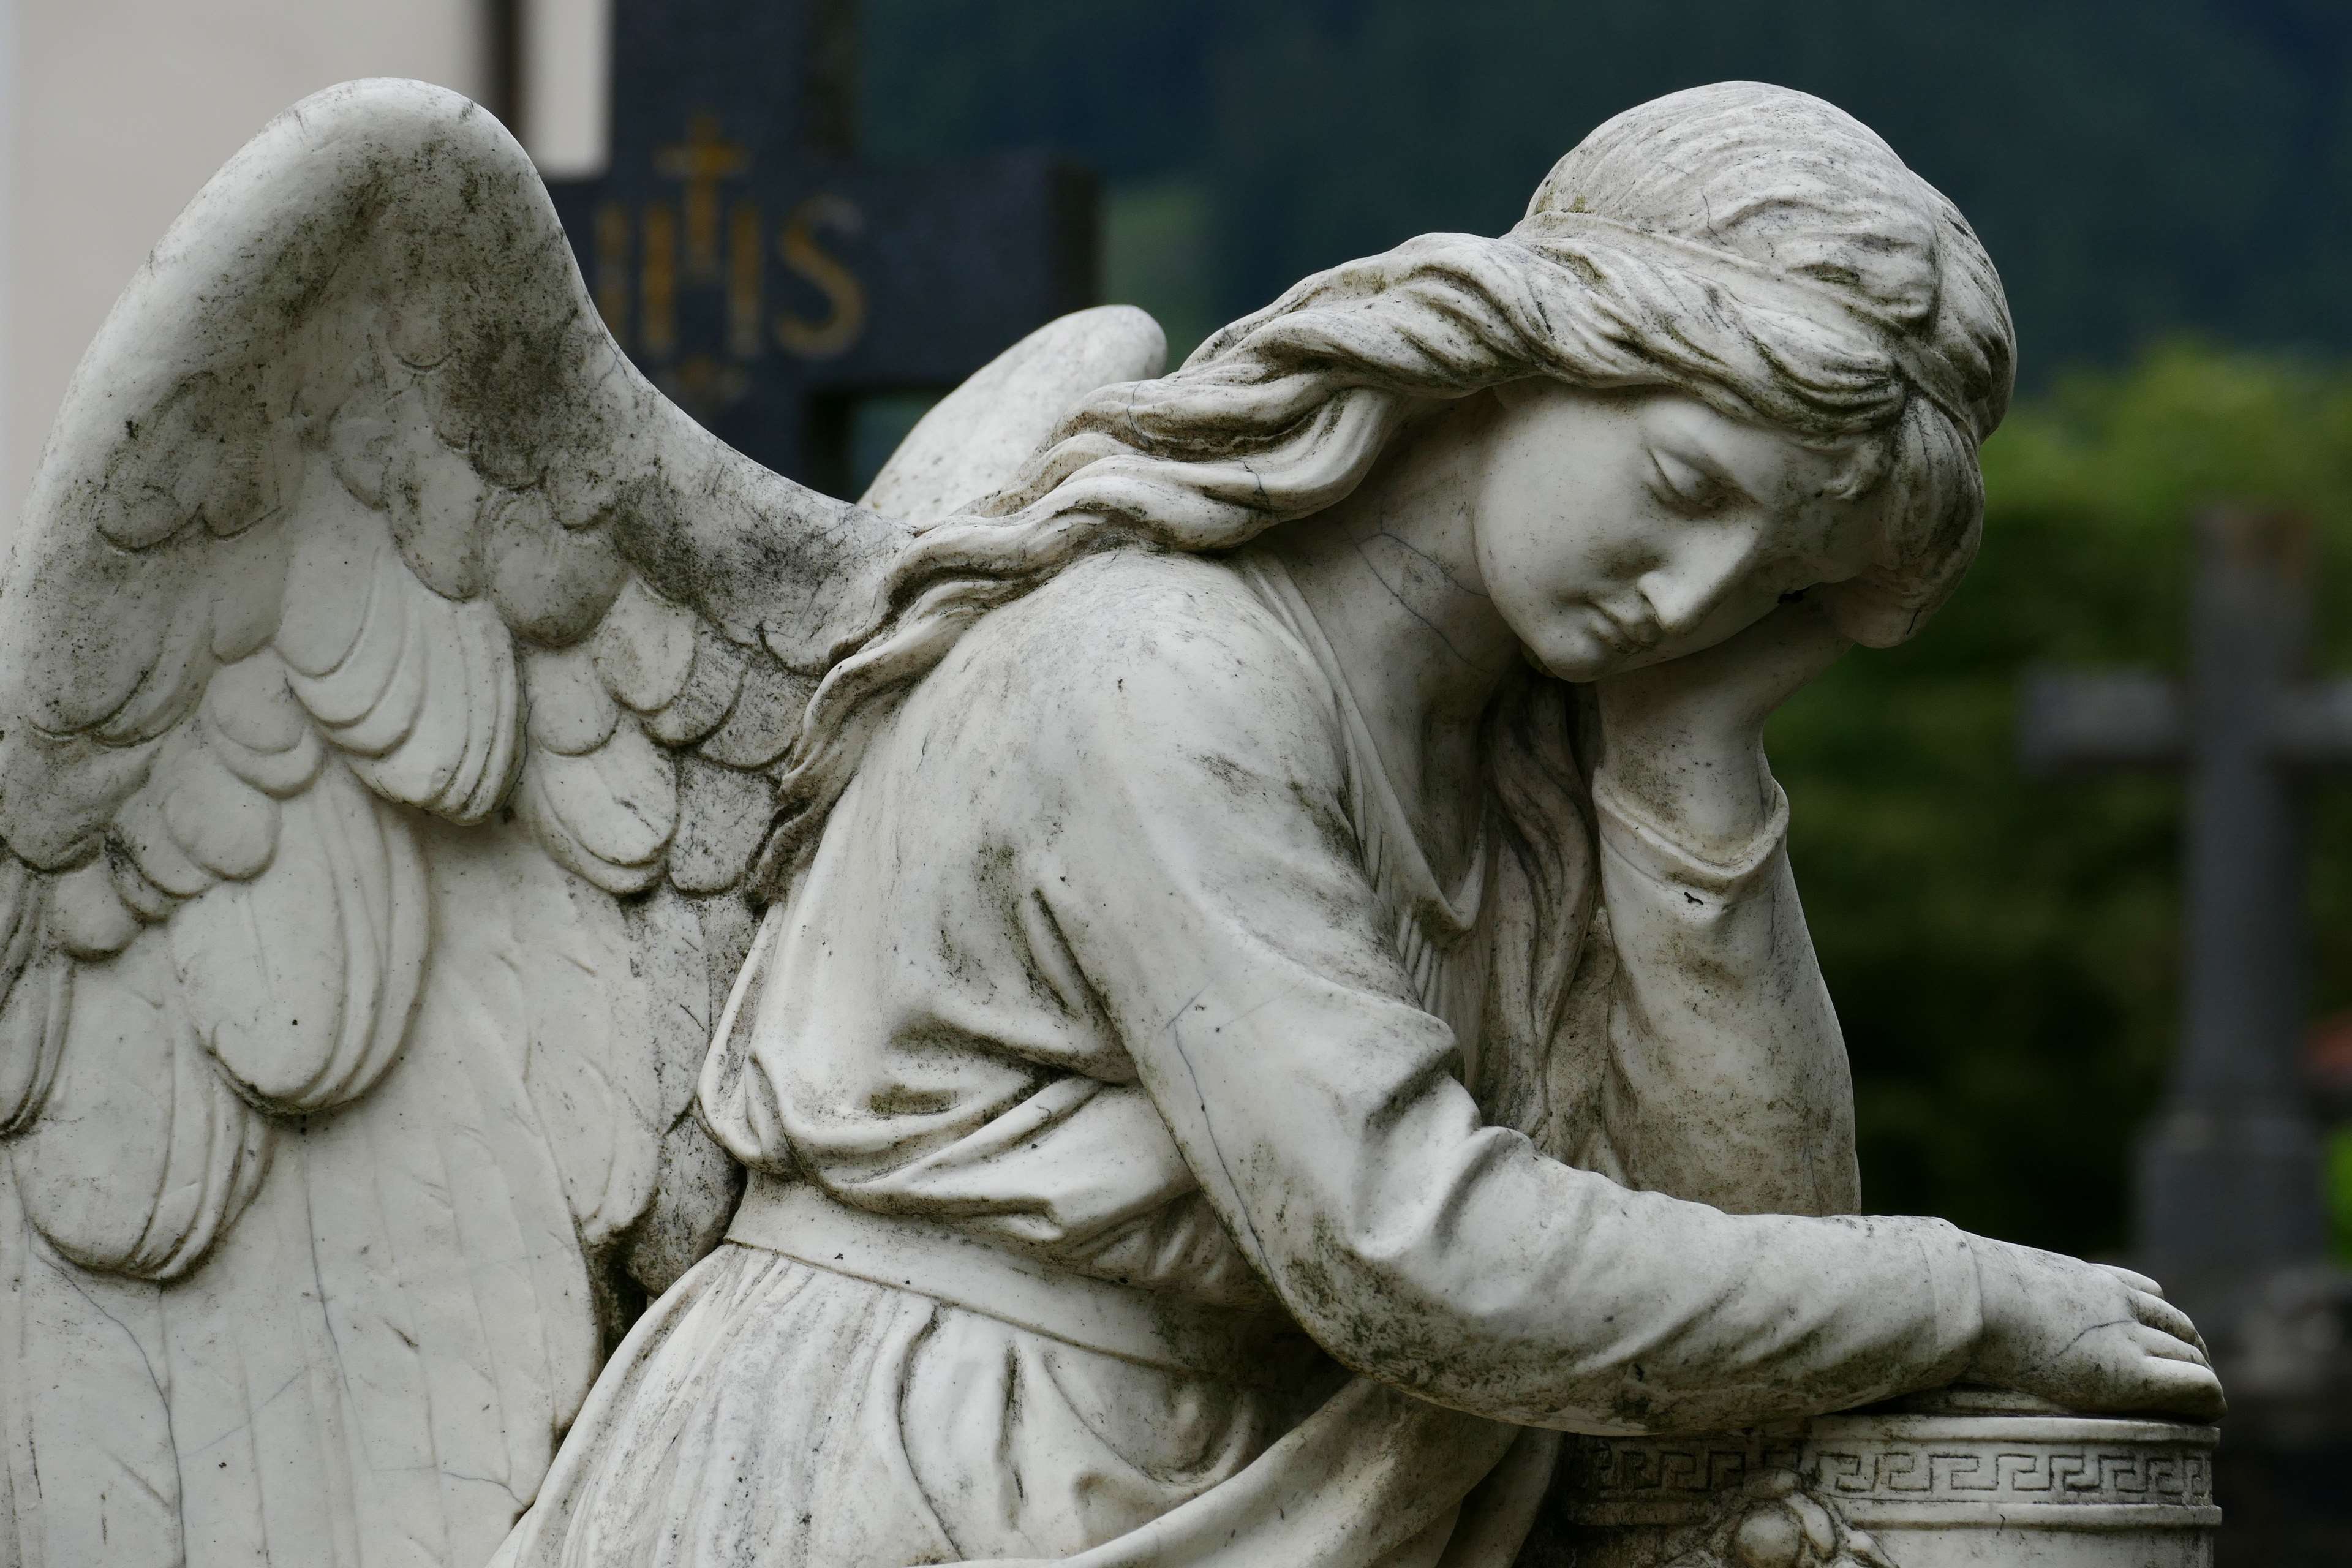 عکس رایگان و فول اچ دی مجسمه واقعی سنگی فرشته بال دار 